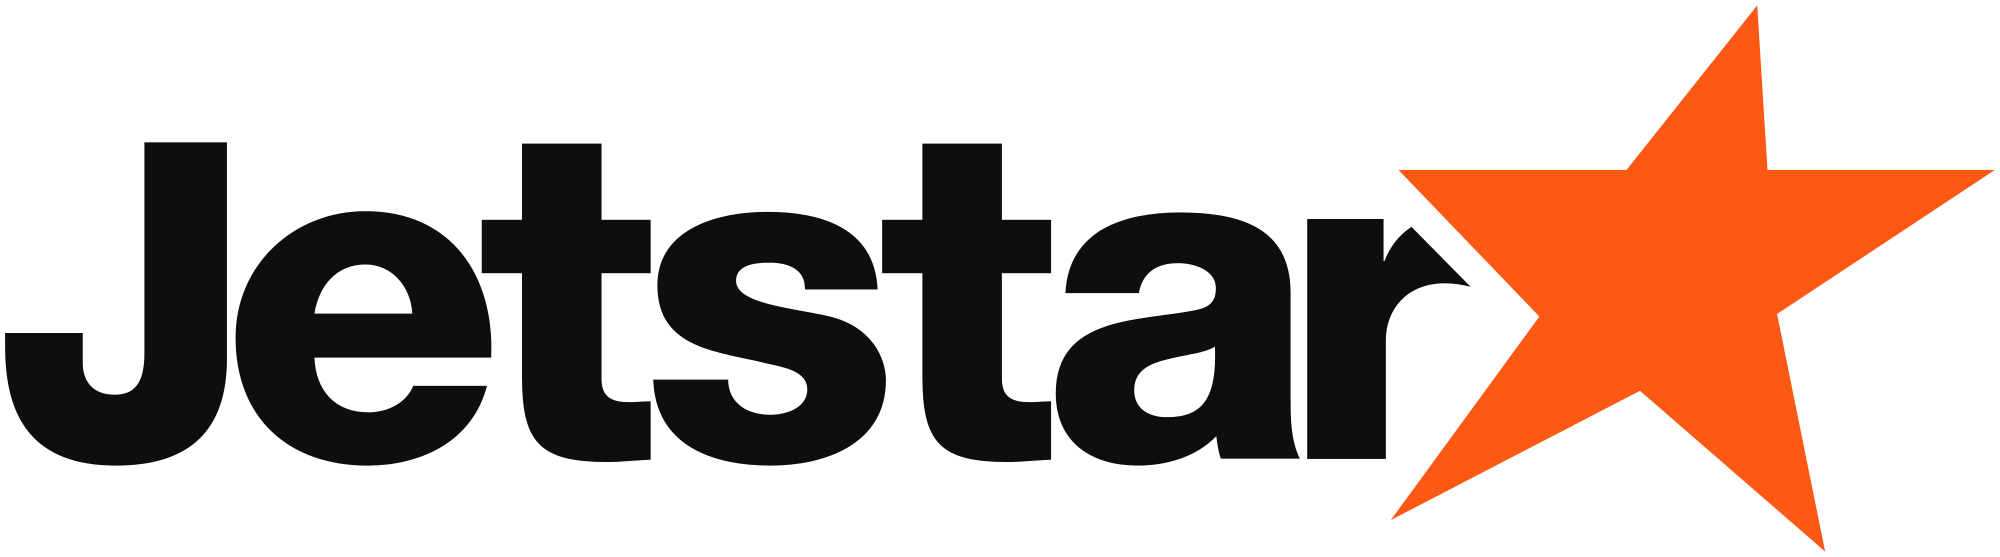 Jetstar Logo - Jetstar logo.svg